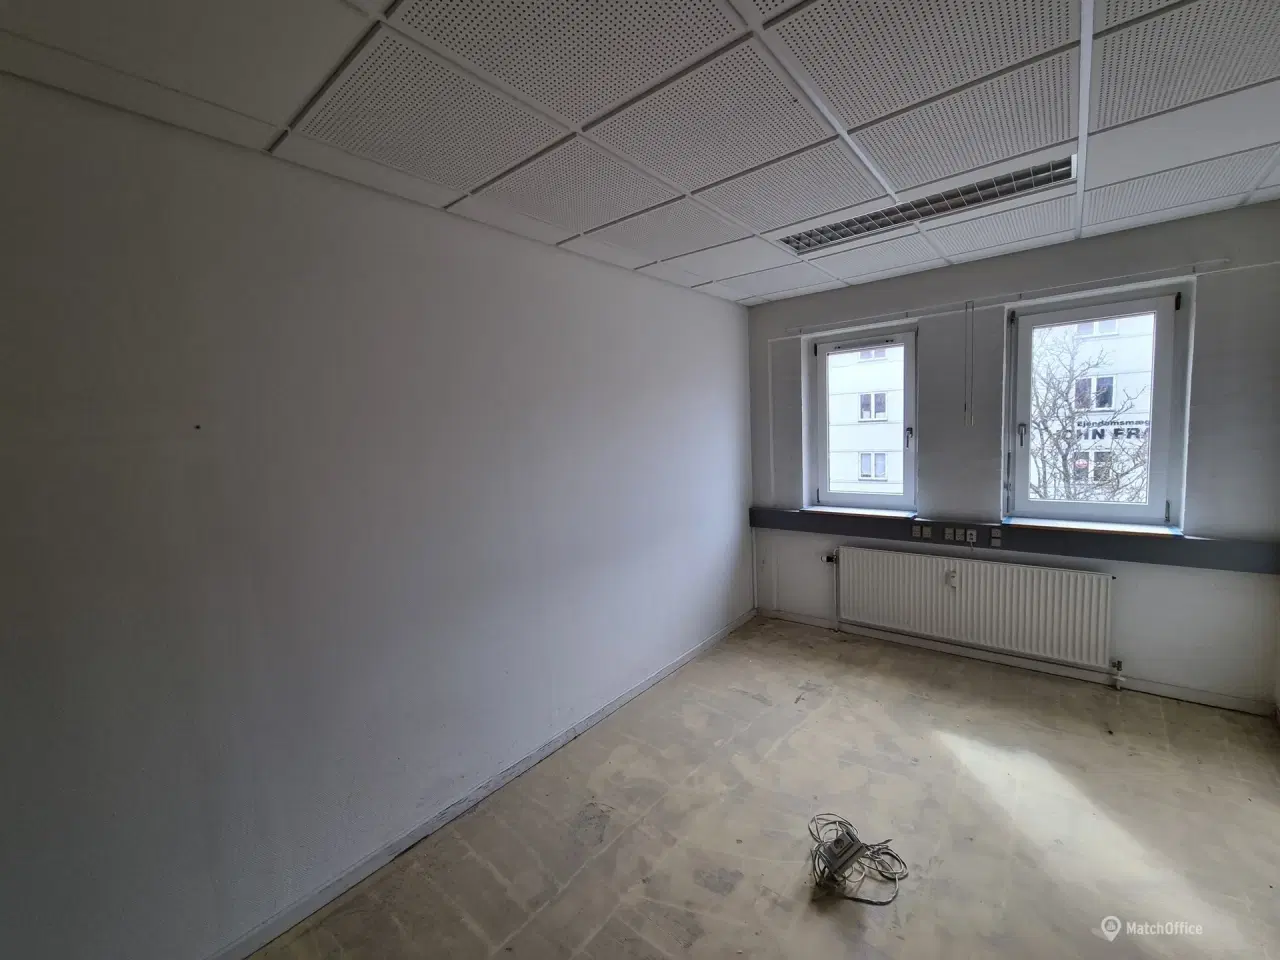 Billede 5 - 283 kvm kontor i Viborg centrum udlejes